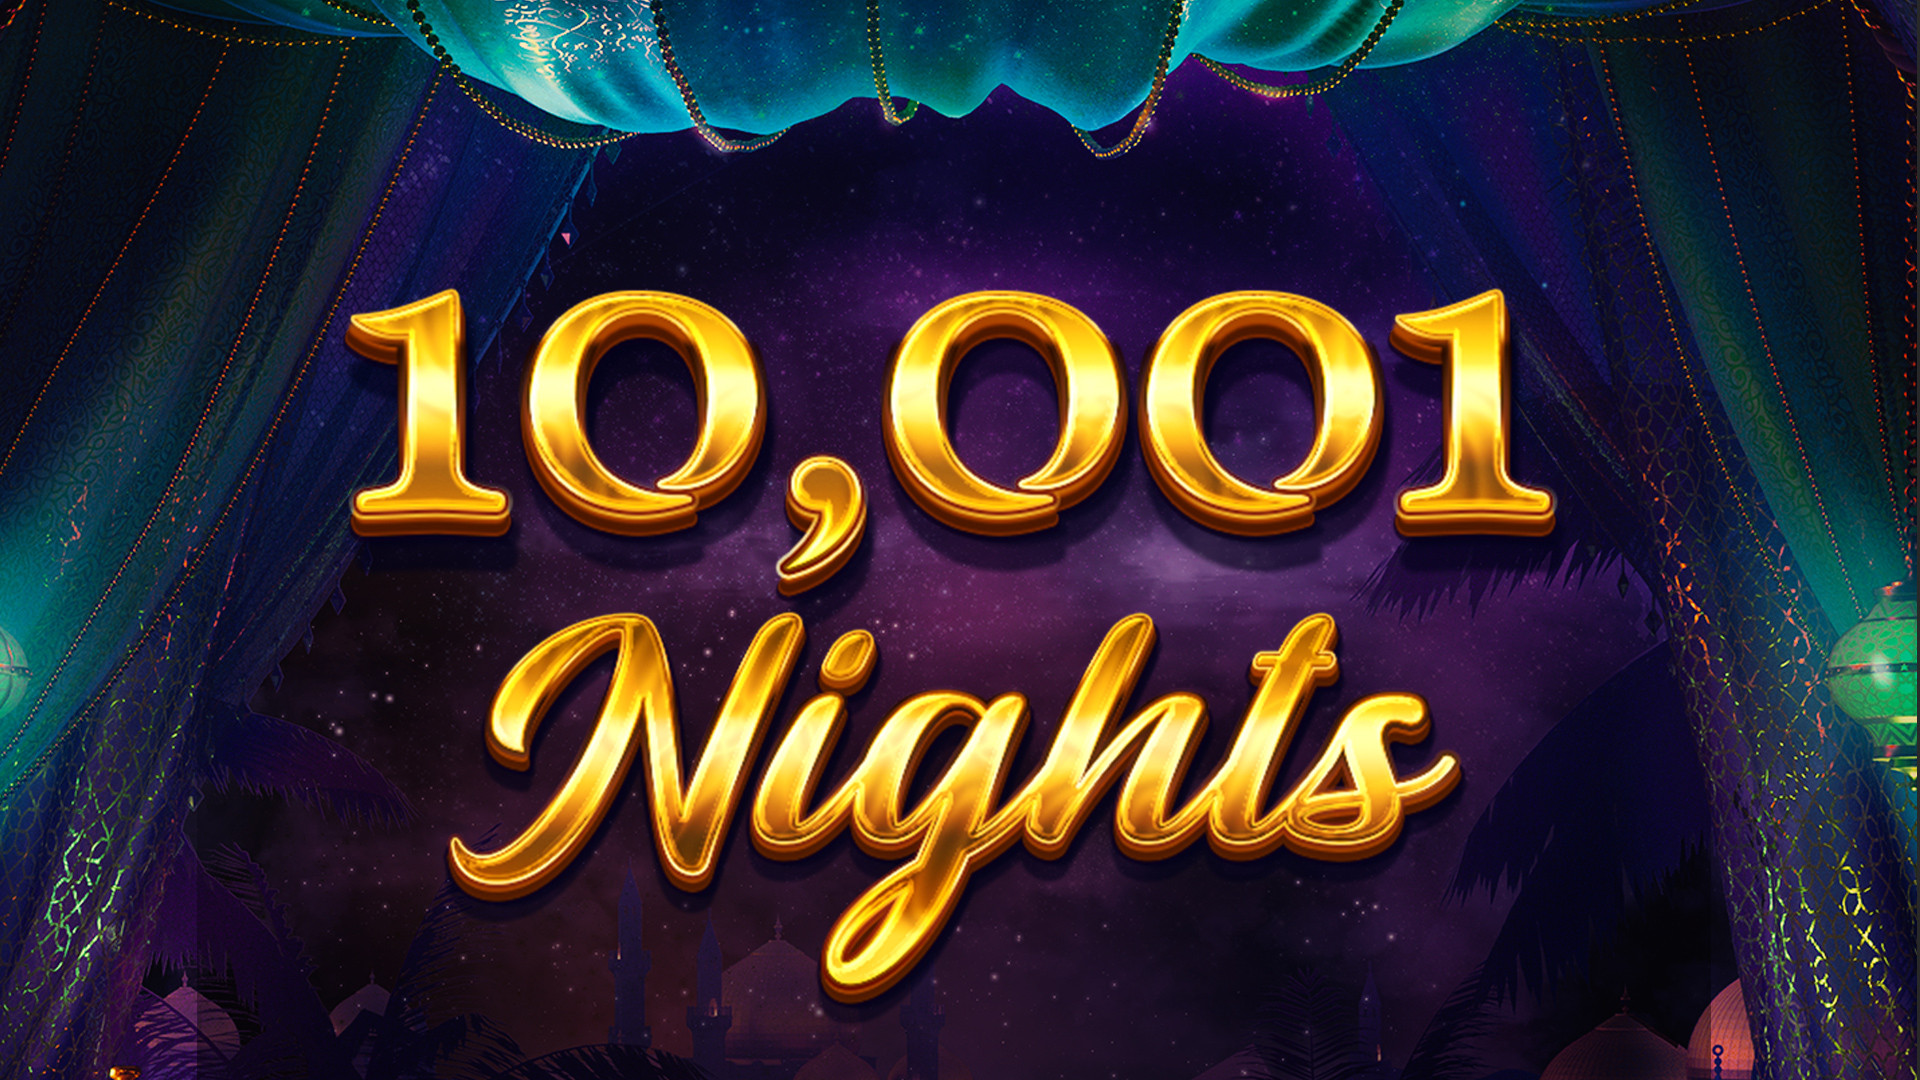 10,001 Nights